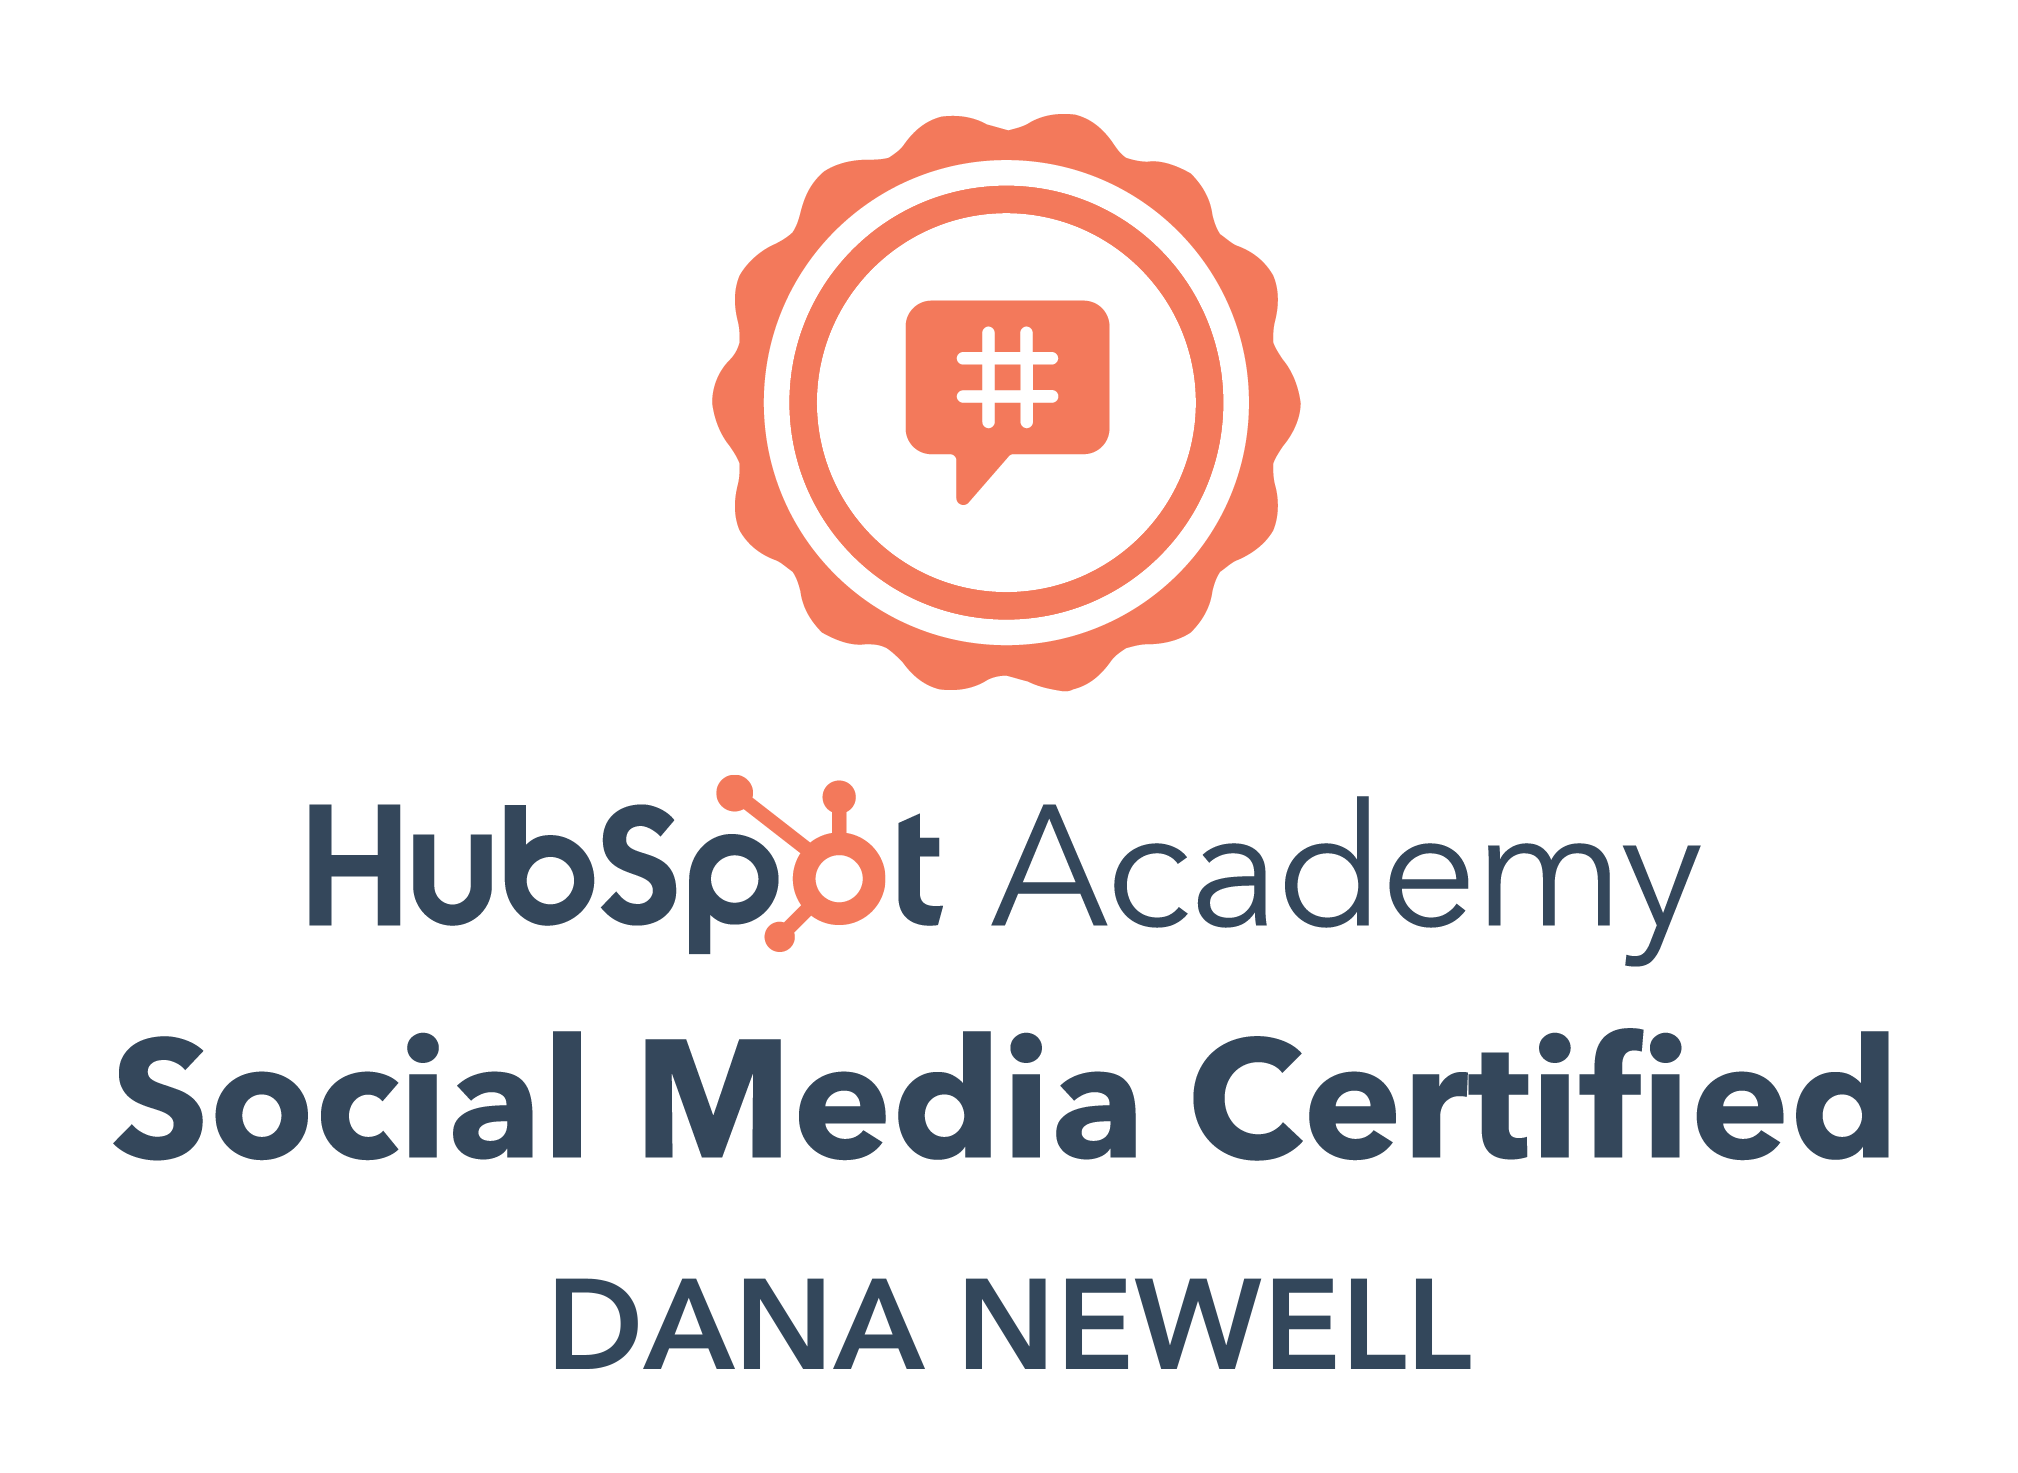 HubSpot Academy Social Media Certification Image